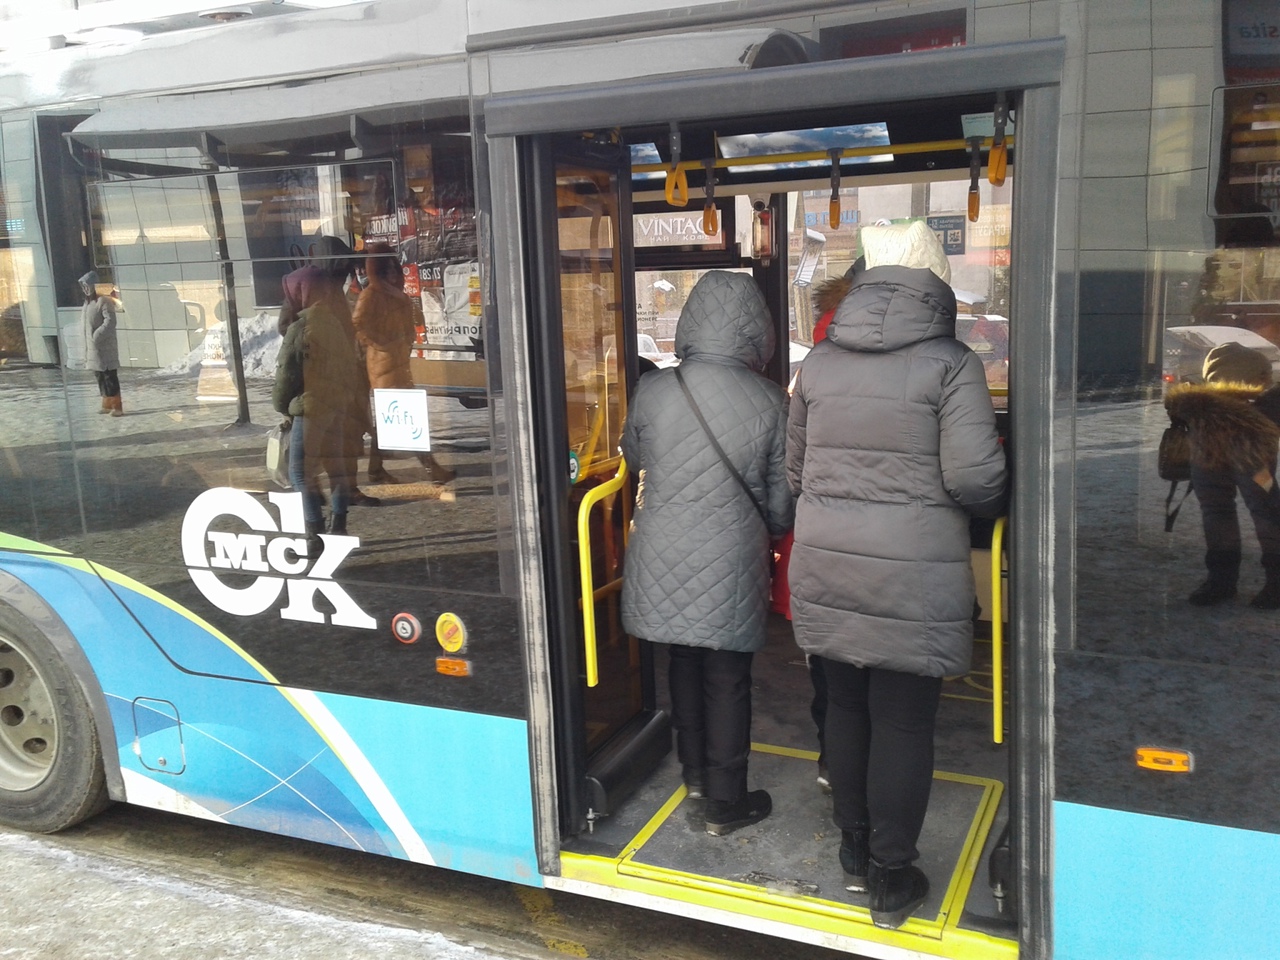 Омичка, ехавшая в троллейбусе, получила сотрясение мозга #Новости #Общество #Омск